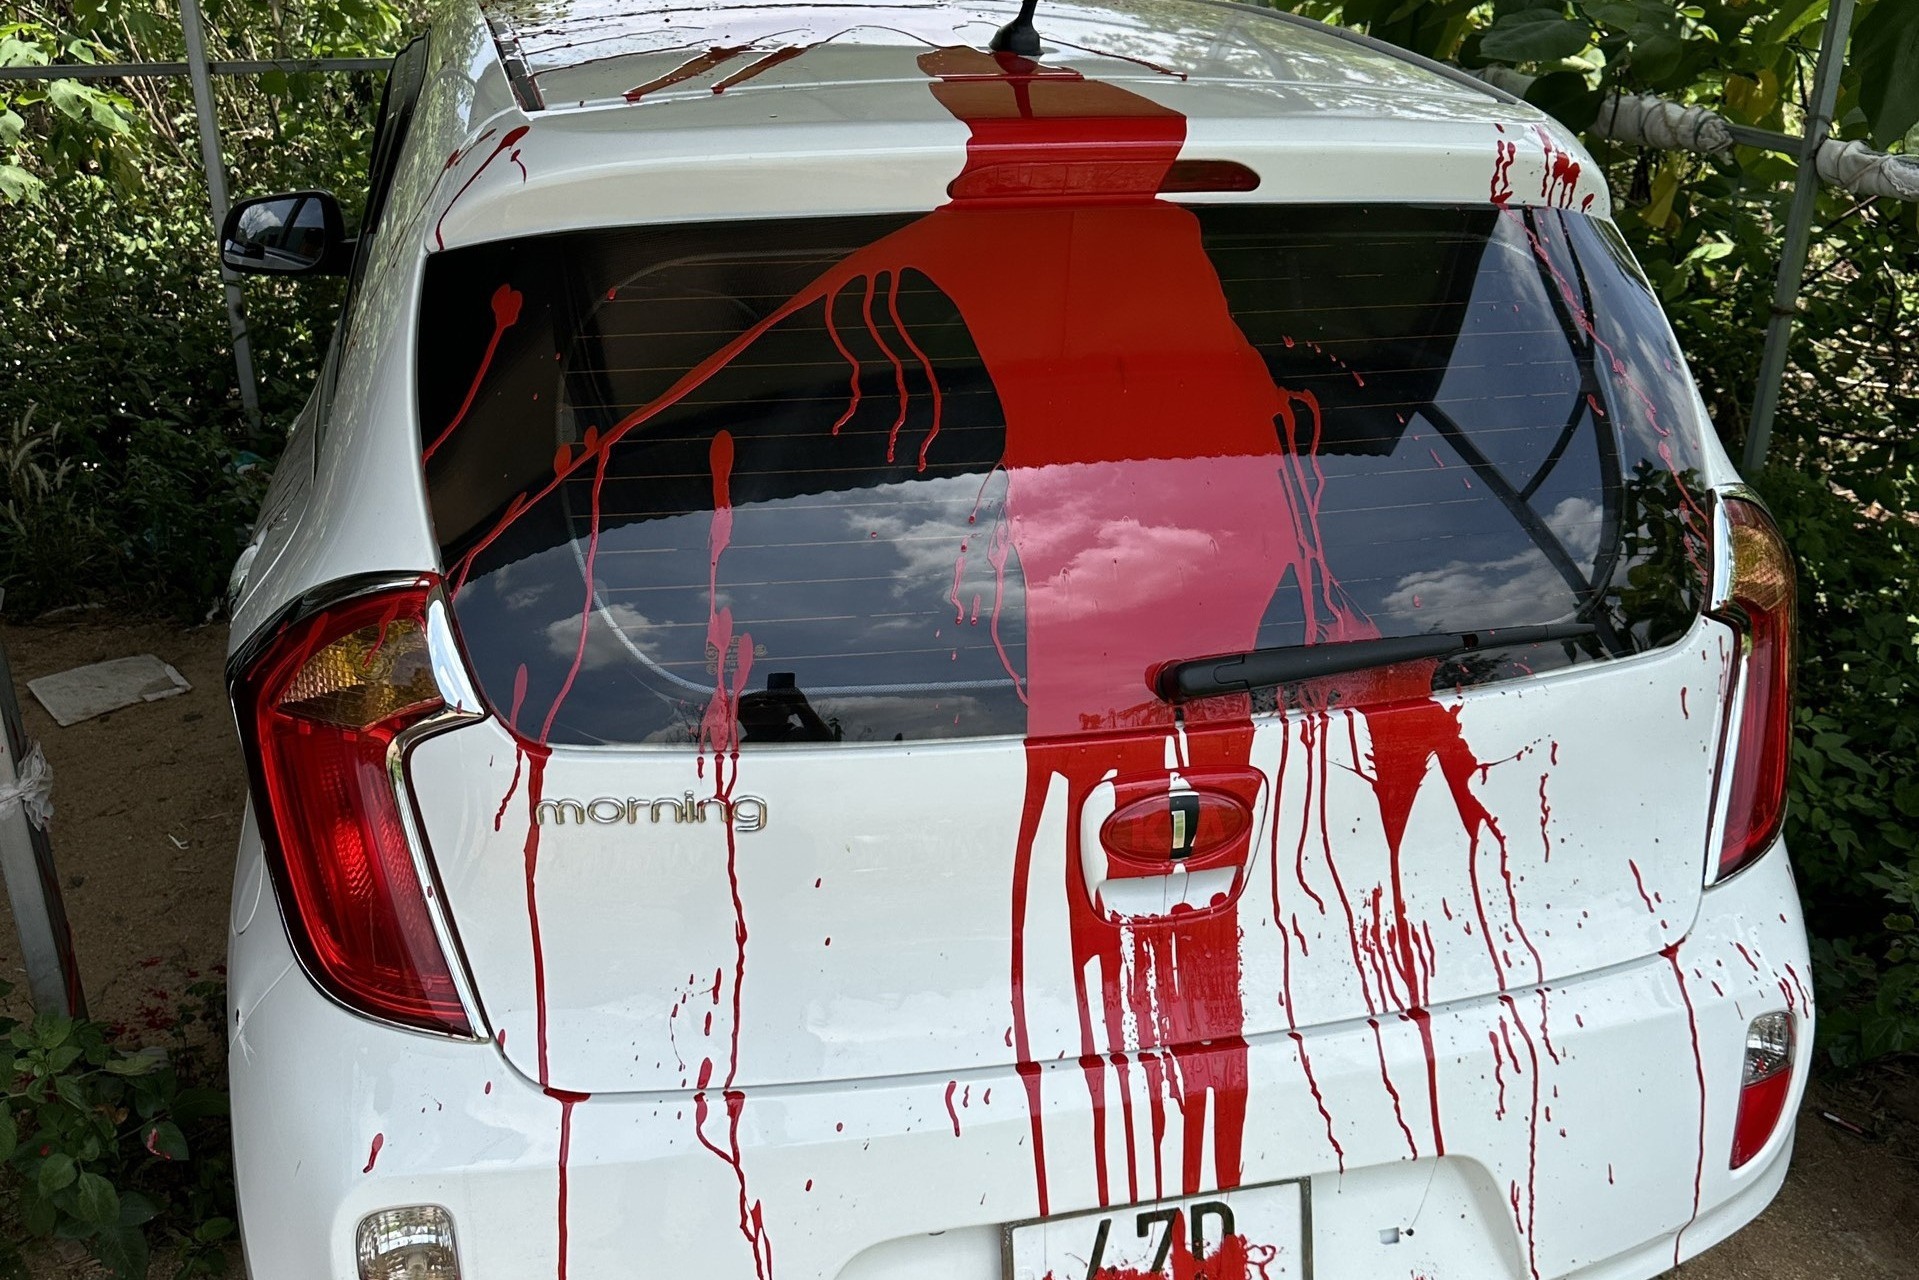 Báo Tuổi Trẻ muốn làm rõ việc xe của nhà báo ở Đắk Lắk bị tạt sơn đỏ